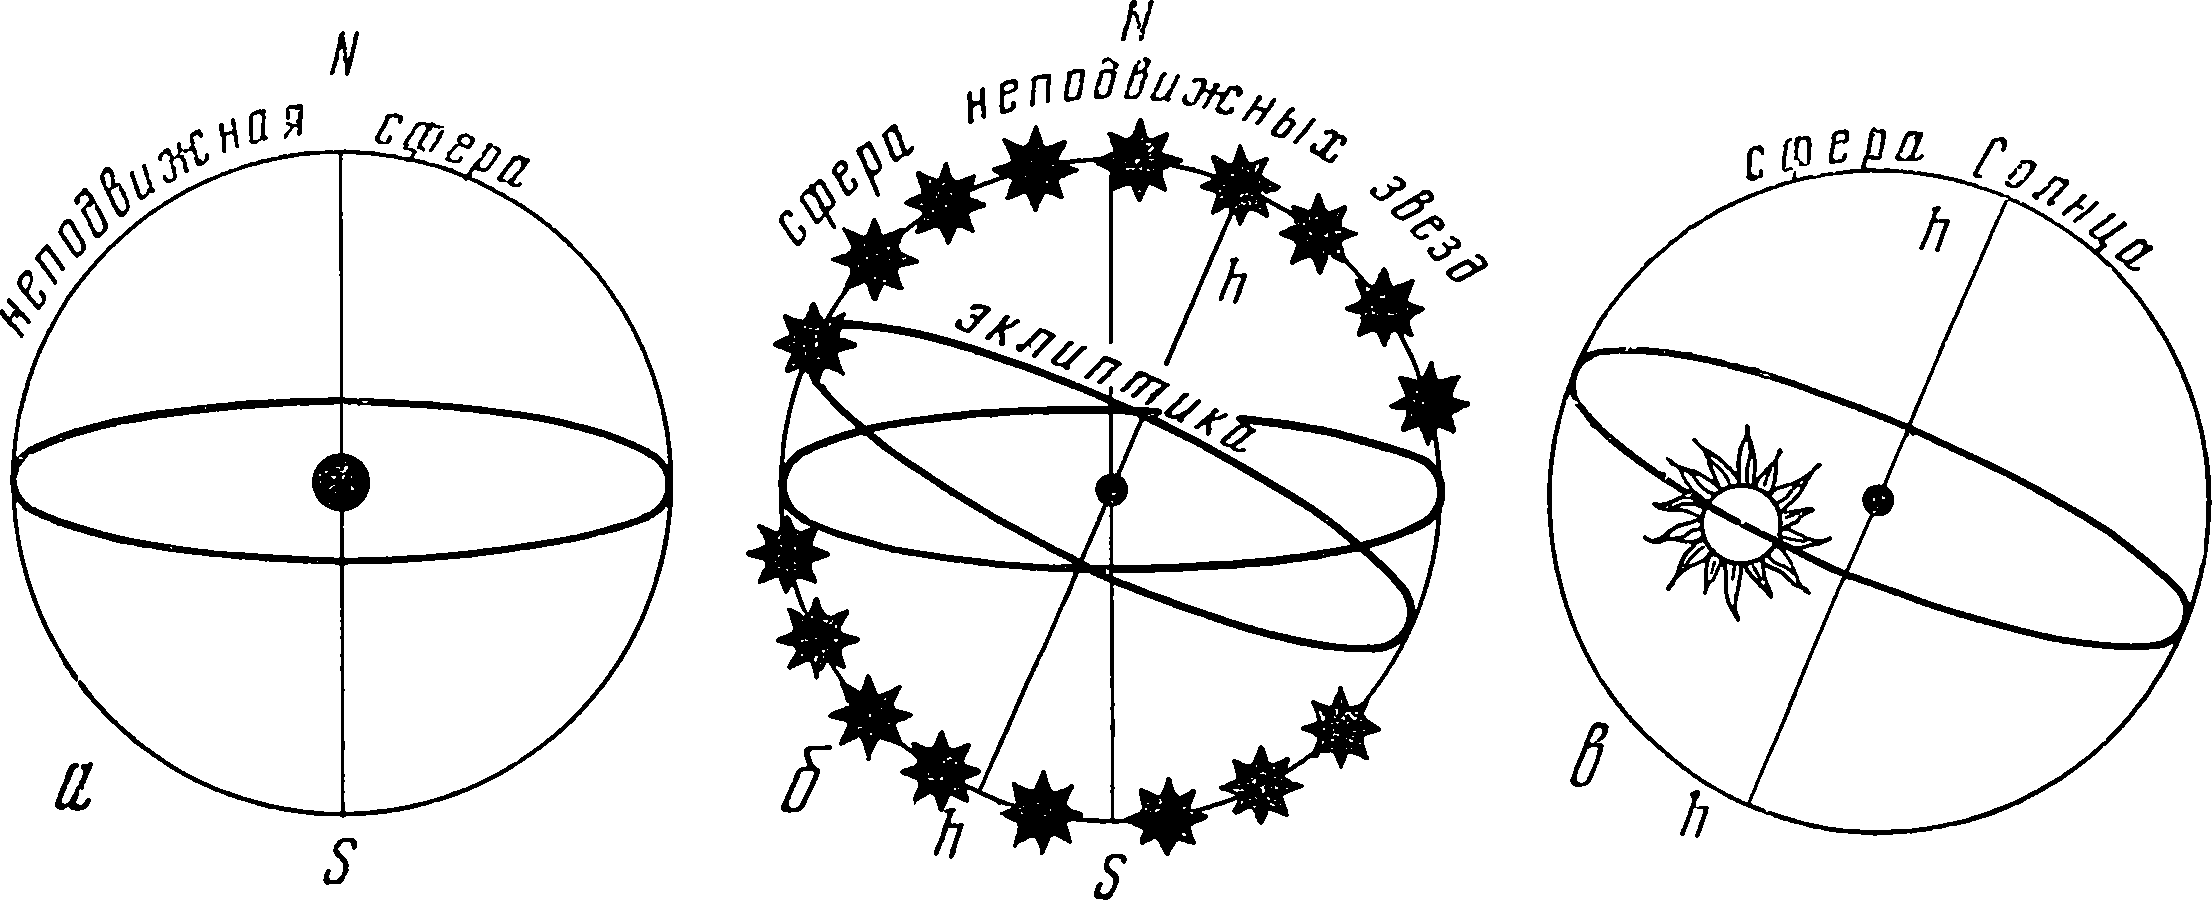 Система гомоцентрических сфер Евдокса для Солнца и неподвижных звезд. а — неподвижная сфера, связанная с неподвижной Землей; б — подвижная сфера, на которой расположены все звезды. Экватор этой сферы скользит по экватору неподвижной сферы, совершая один оборот в сутки. На сфере неподвижных звезд — линия эклиптики, ось которой вращается вместе с этой сферой, описывая на ней северный и южный полярные круги; в — сфера, экватор которой скользит по эклиптике, совершая один оборот в год. Ее полюса совпадают с полюсами эклиптики. На экваторе этой сферы находится Солнце, которое проходит каждый знак зодиака за 1/12 часть года. Полгода оно выше экватора, а полгода ниже его, чем объясняется смена времен года. Прямая, на которой пересекаются плоскости экватора и эклиптики, неподвижна на сфере и называется линией равноденствия